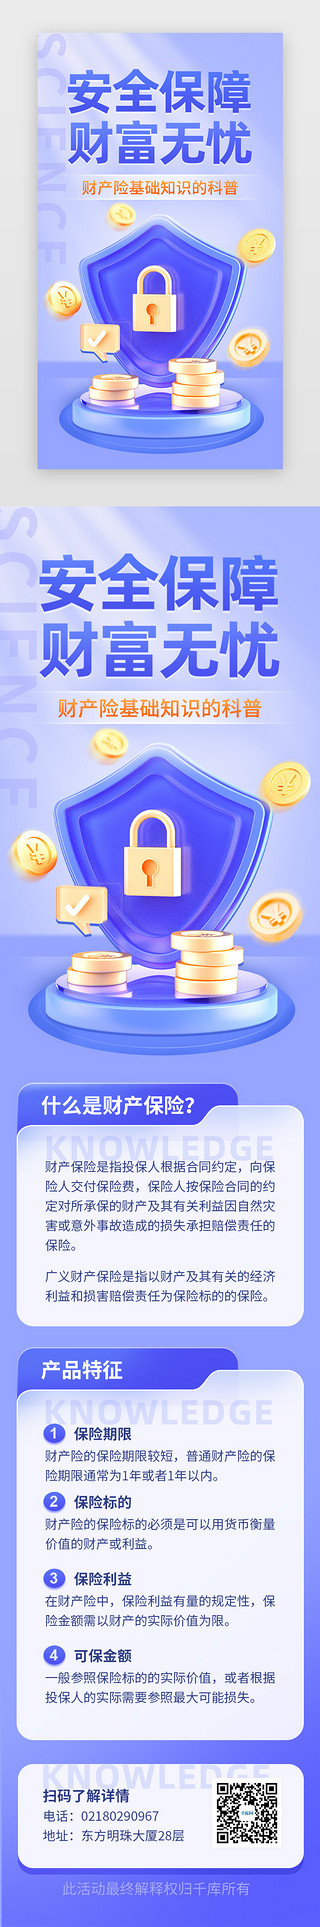 盾牌拳头logoUI设计素材_财产保险知识科普app主界面立体蓝紫盾牌